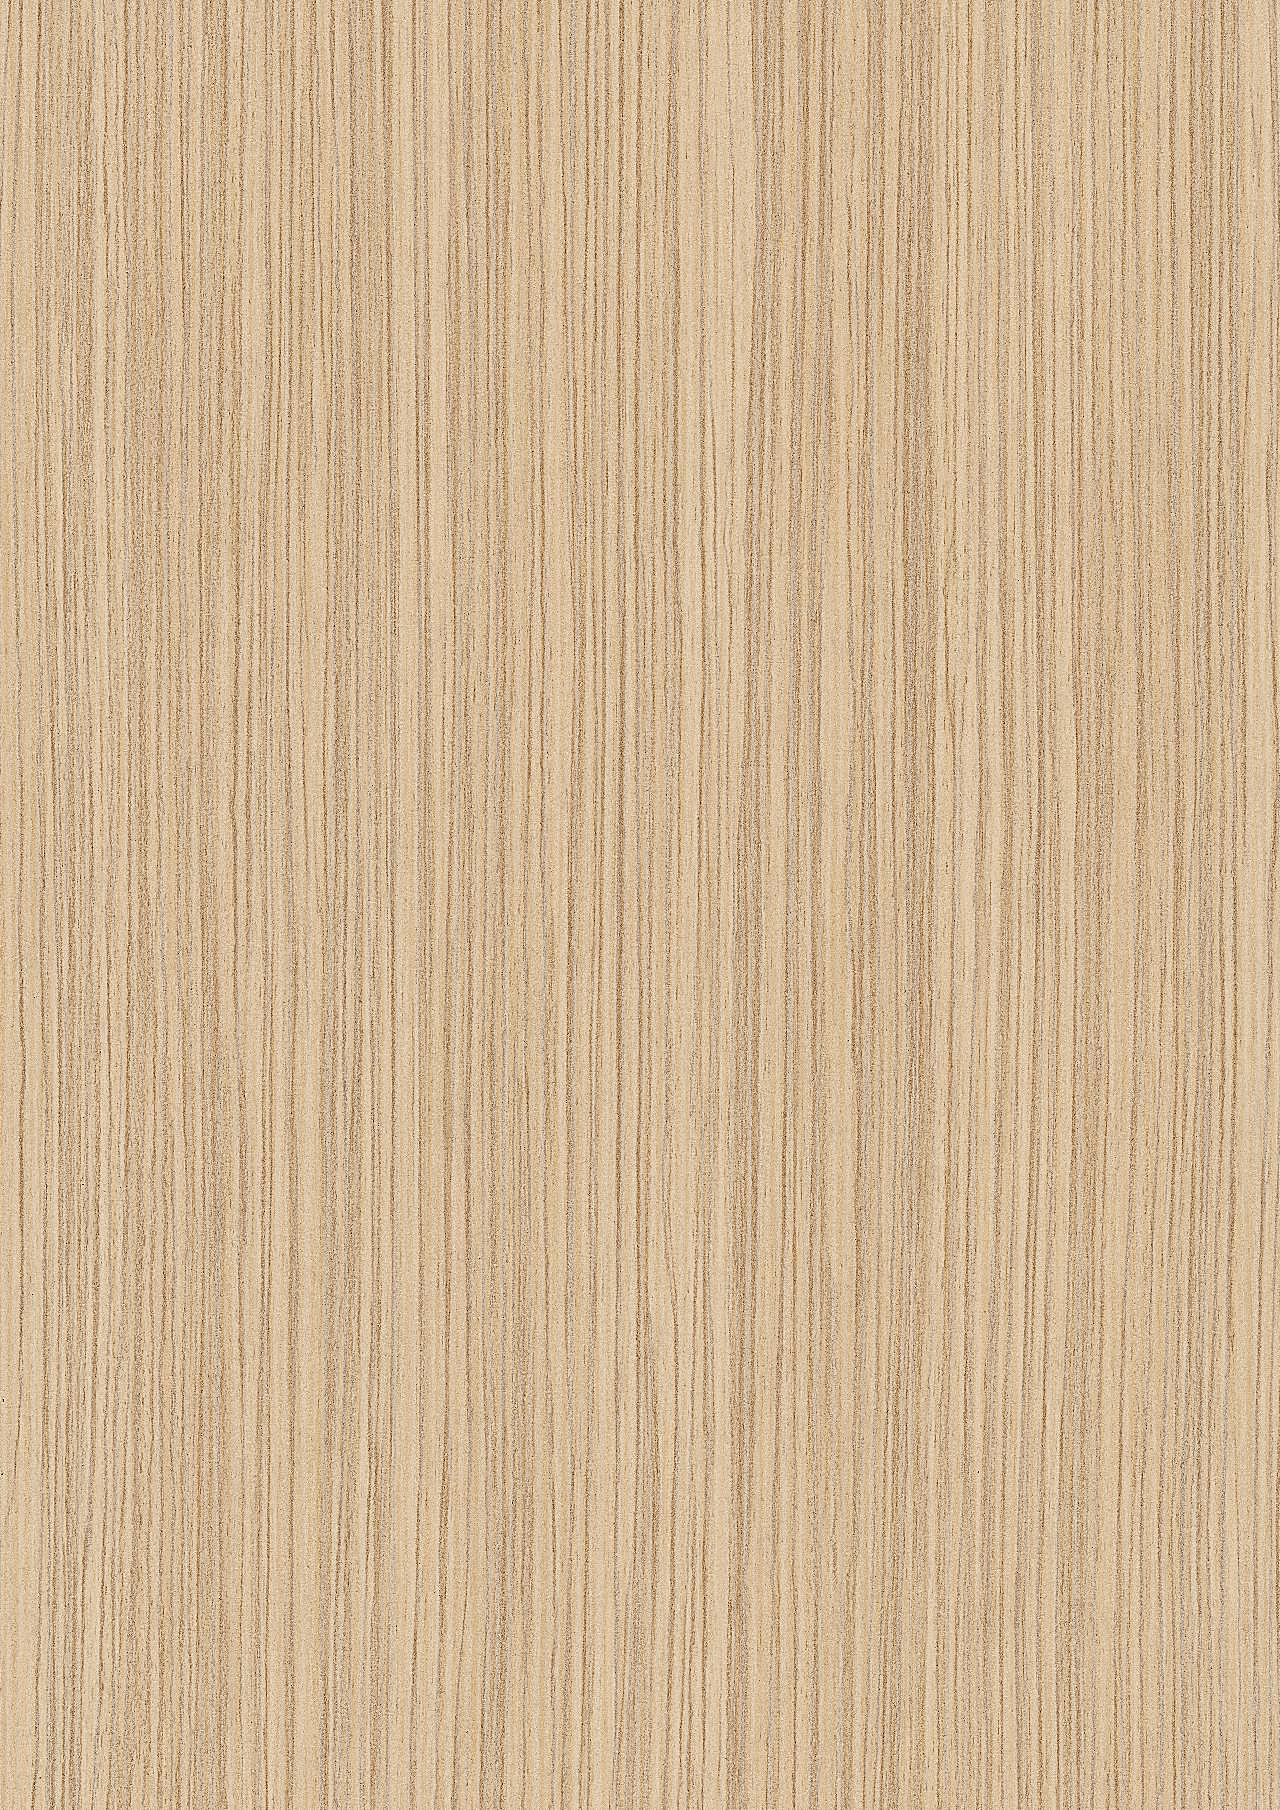 高清木纹桌面背景图片